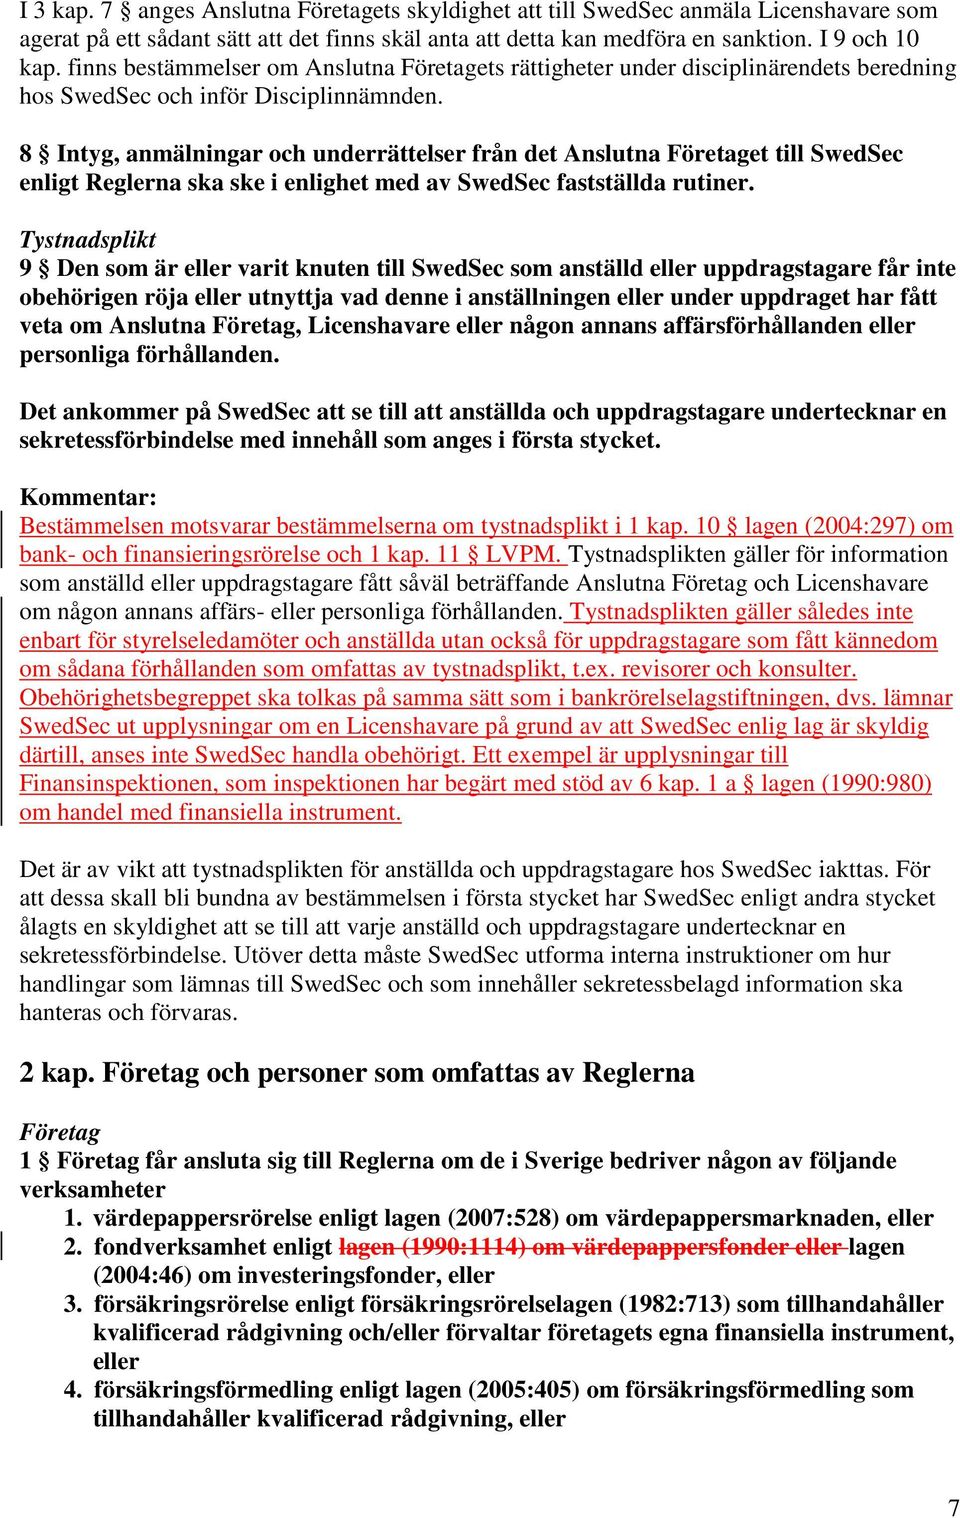 8 Intyg, anmälningar och underrättelser från det Anslutna Företaget till SwedSec enligt Reglerna ska ske i enlighet med av SwedSec fastställda rutiner.